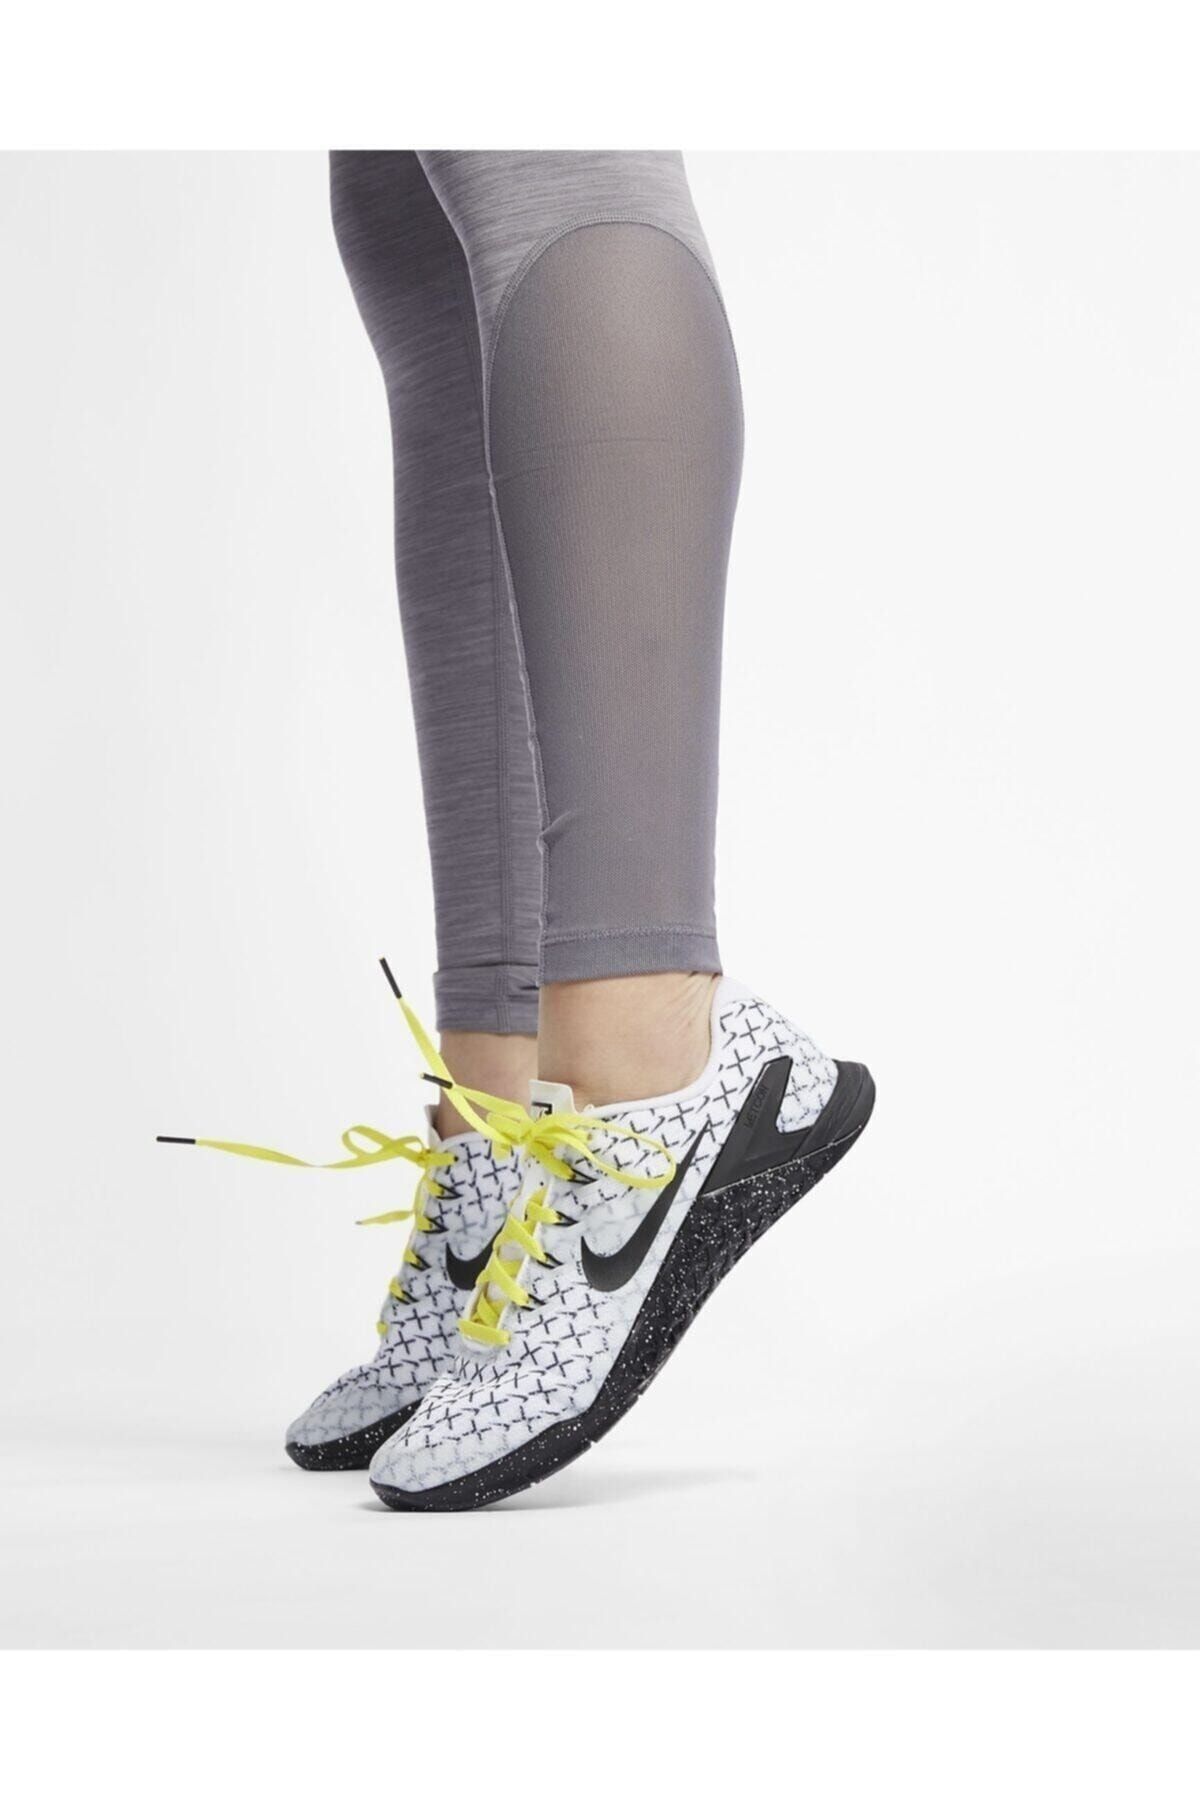 Nike Pro Kadın Gri Tayt Cz6497-056 Fiyatı, Yorumları - Trendyol